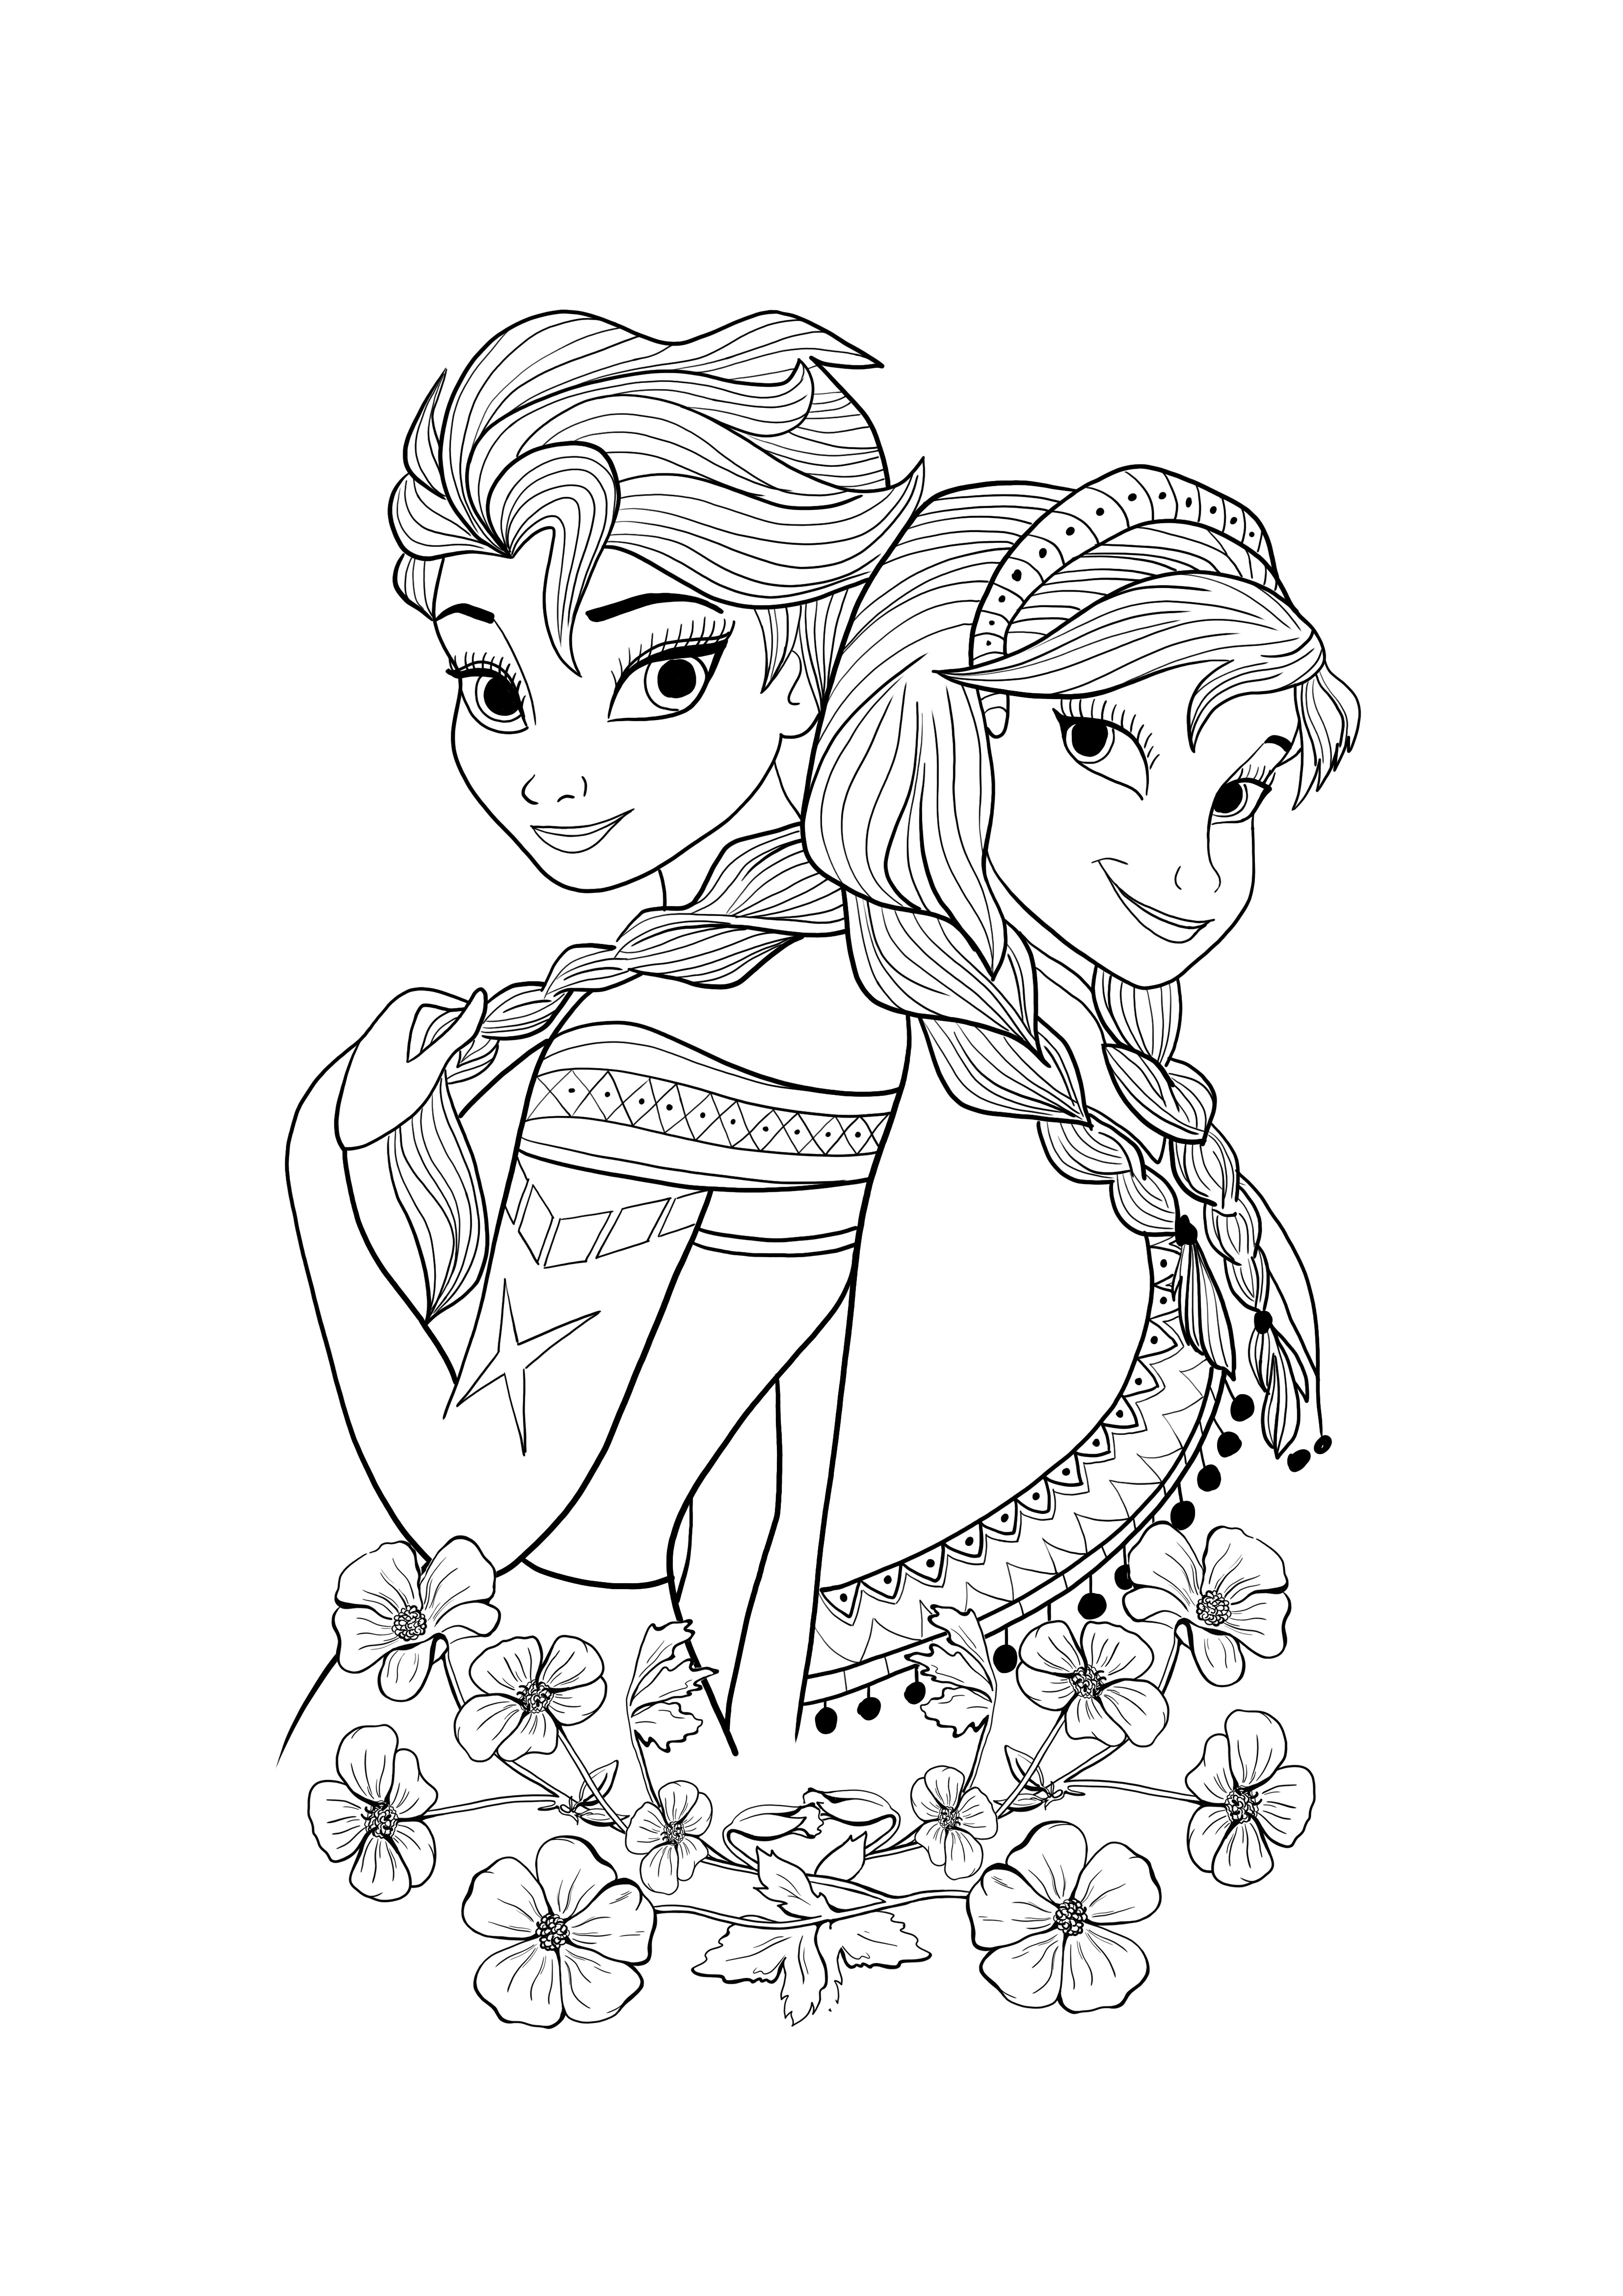 Elsa e Ana para baixar e colorir de graça